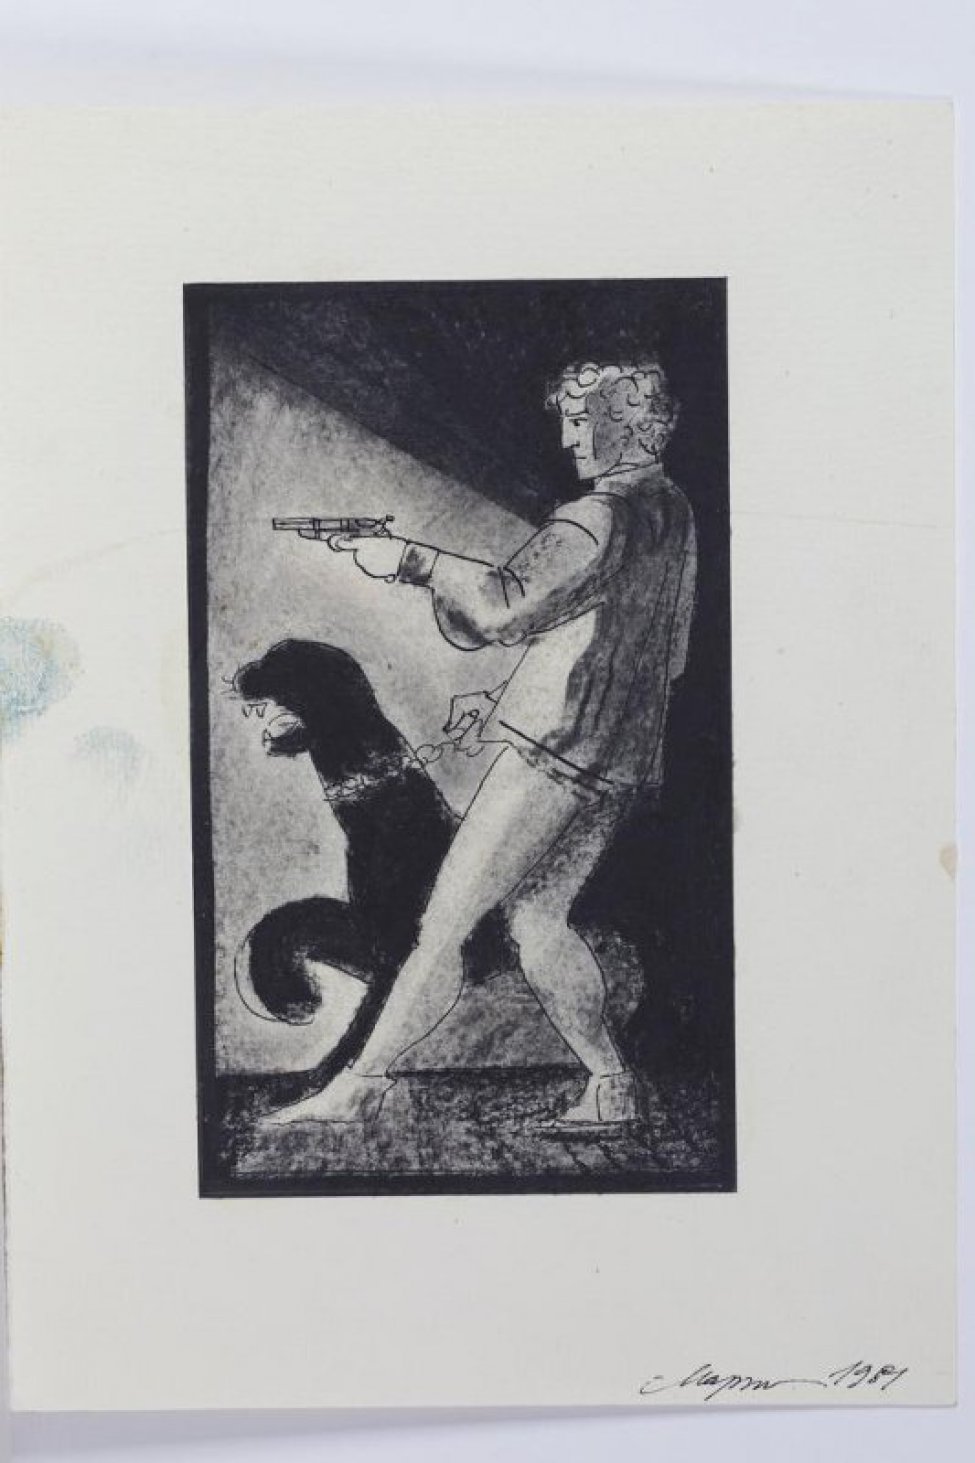 Изображен в рост молодой мужчина с пистолетом в левой руке, ведущий на поводке пантеру.